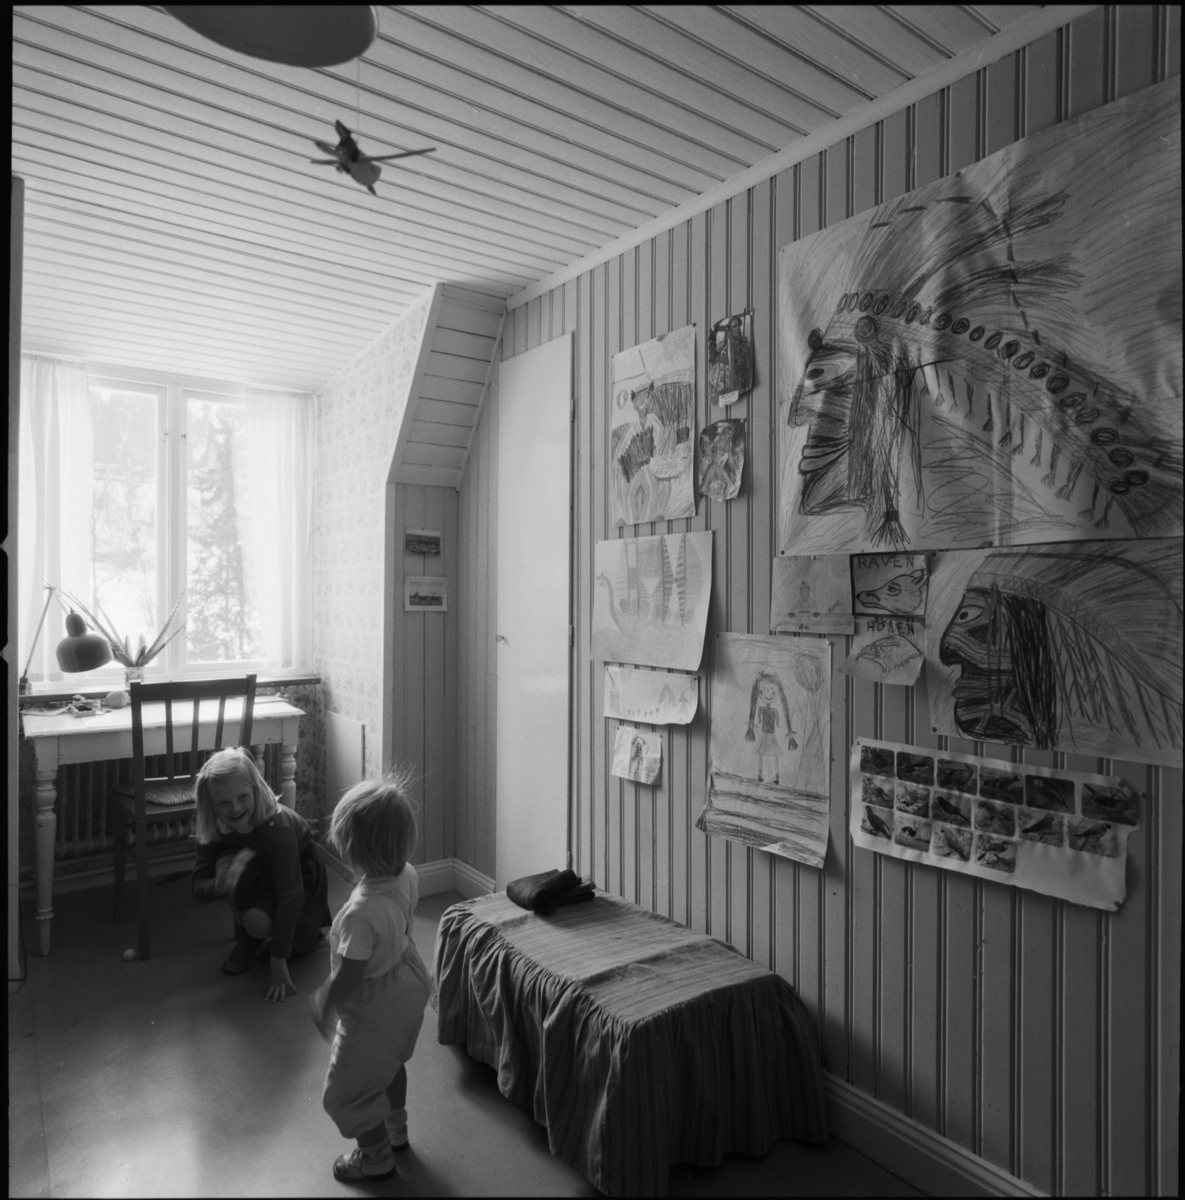 villa Ahlgren
Interiör av barnkammare med två små barn, på väggen barnteckningar.